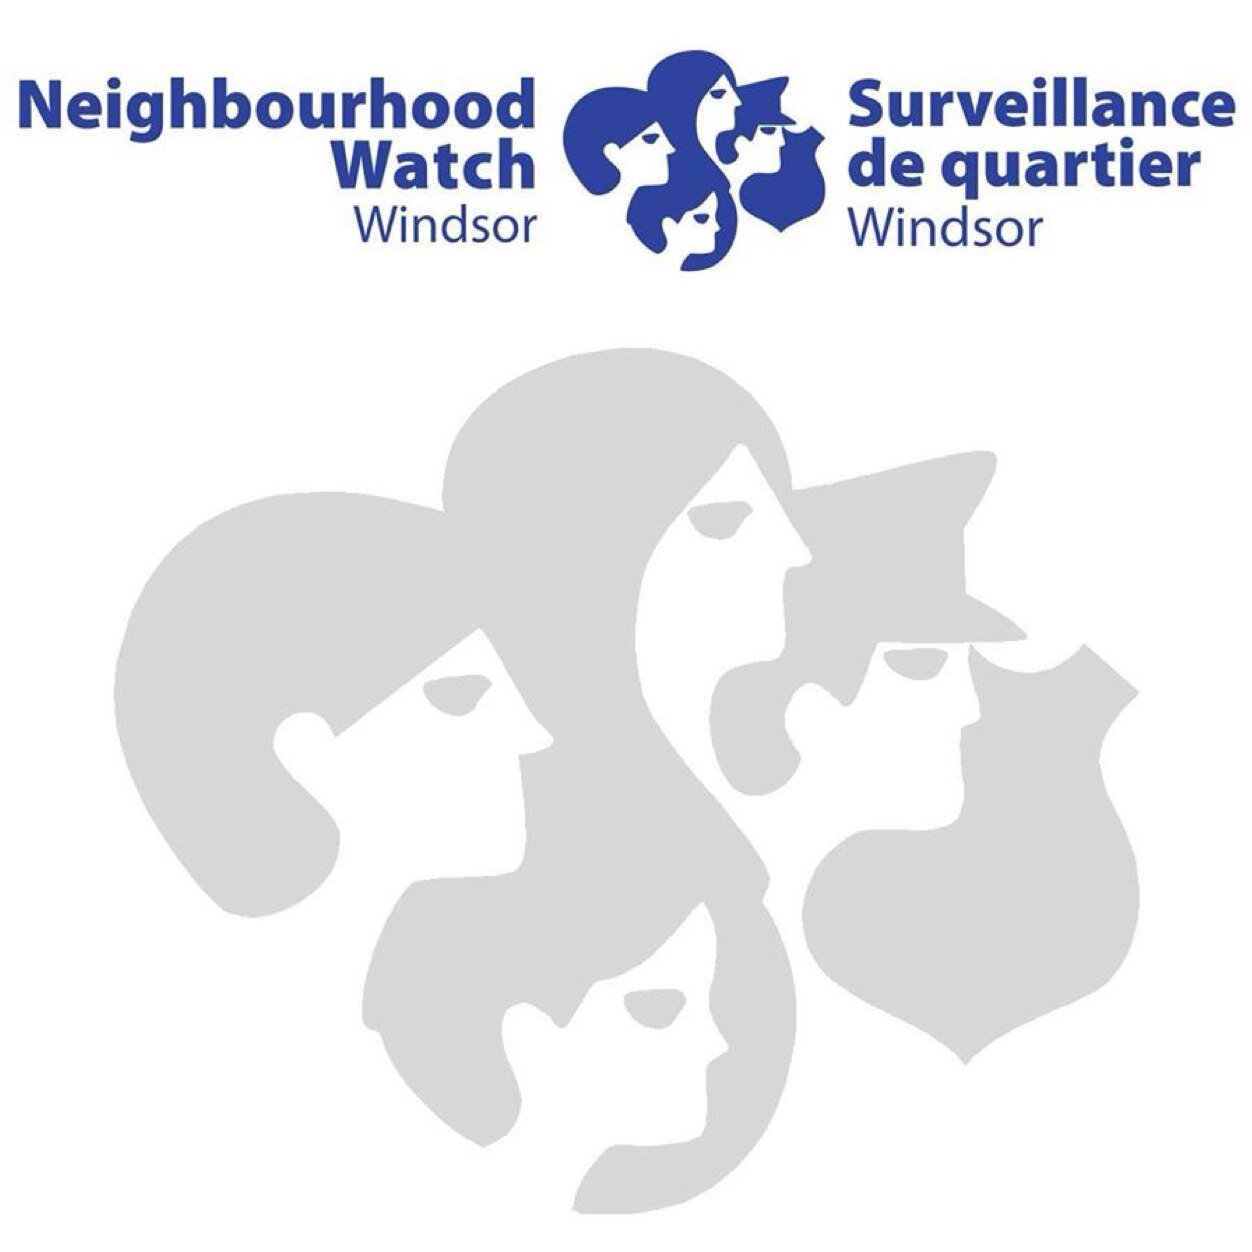 Neighbourhood Watch Windsor